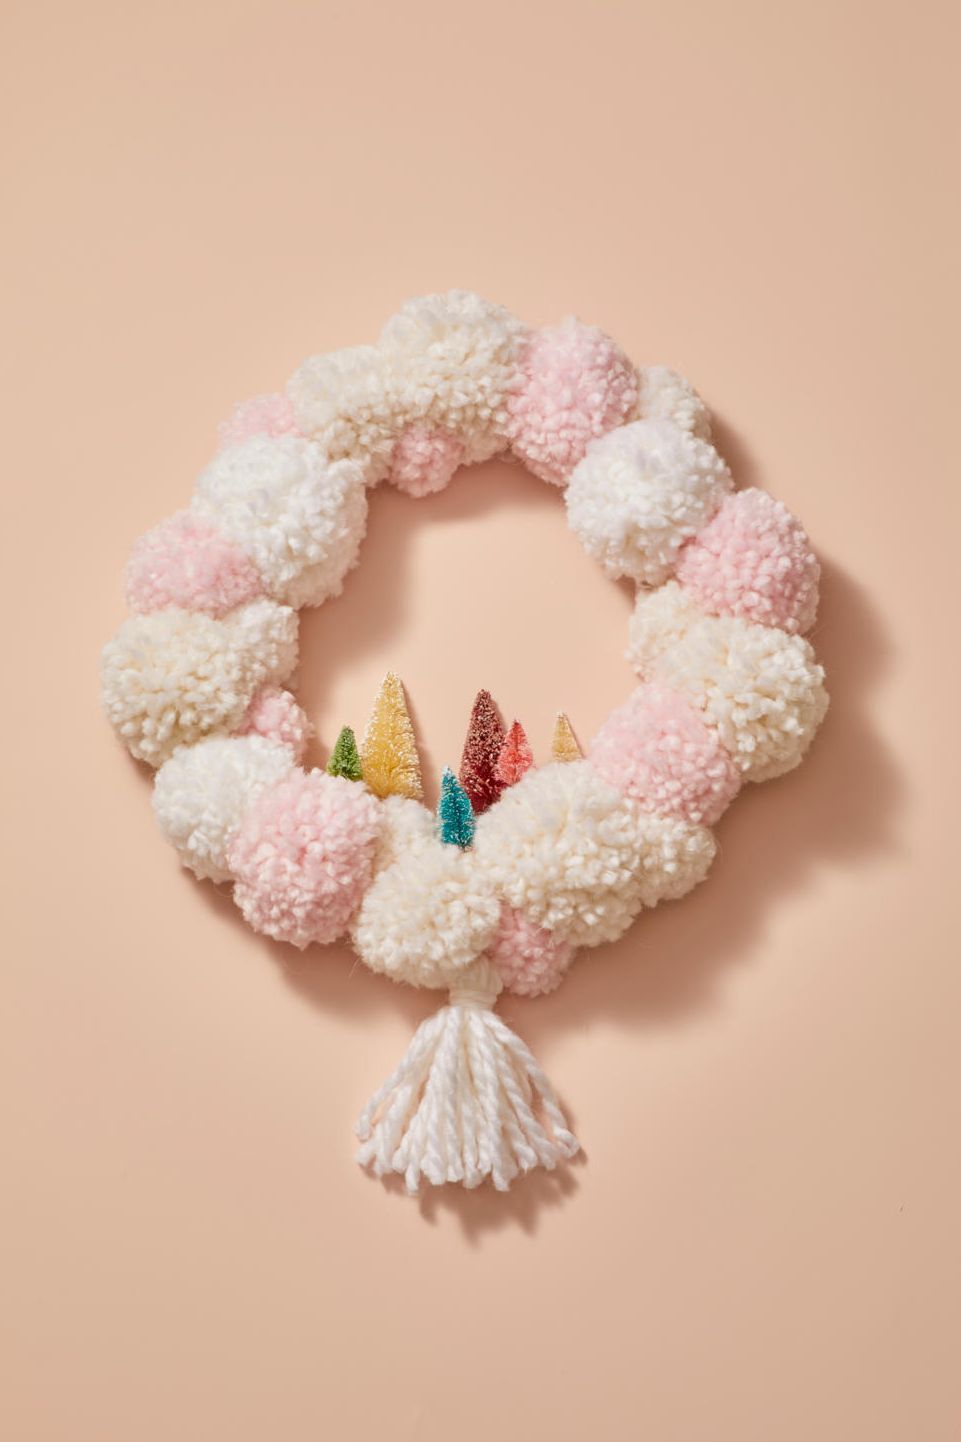 Christmas Pom-Pom Crafts ⋆ A Rose Tinted World